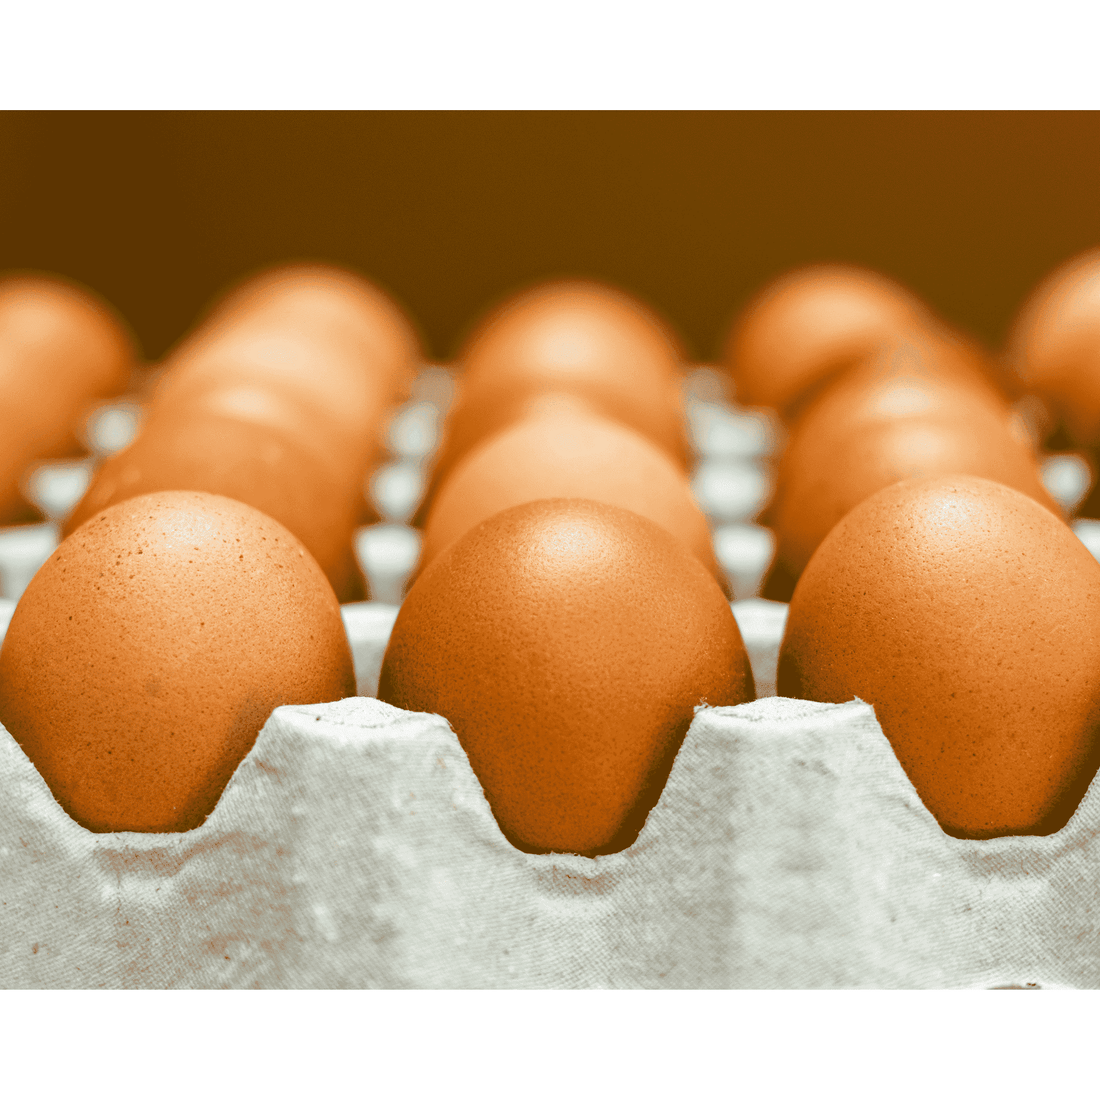 Australorp Hatching Eggs - 1 Dozen - White's Family Farmhouse 